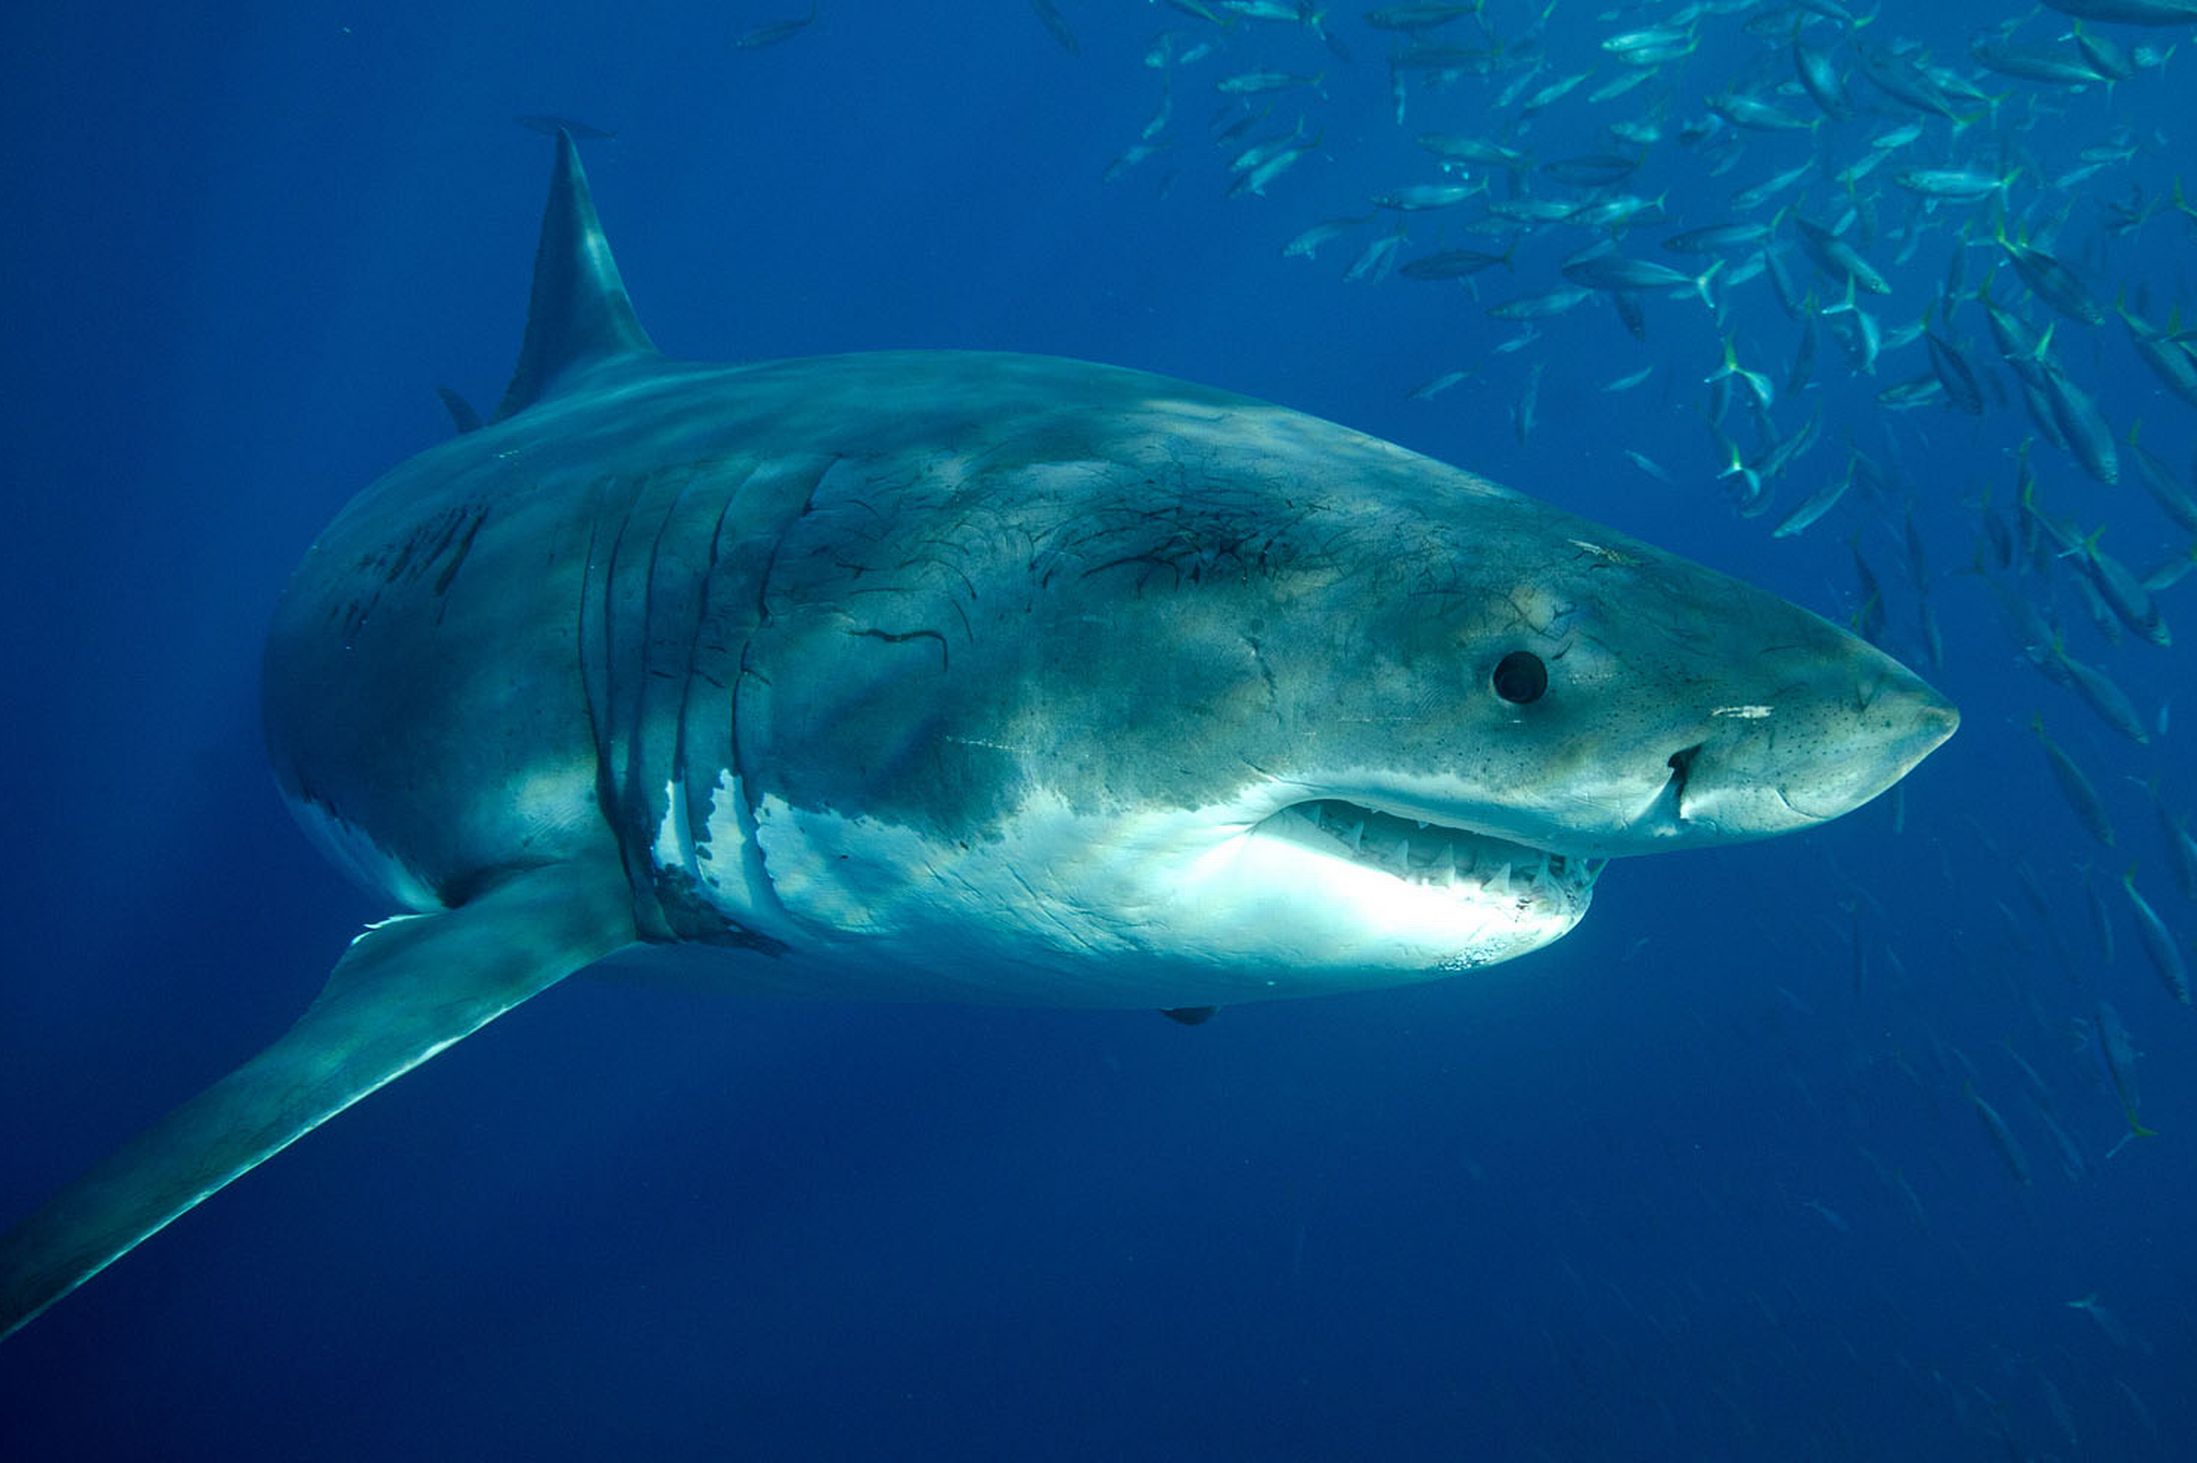 Animal Great White Shark 2197x1463